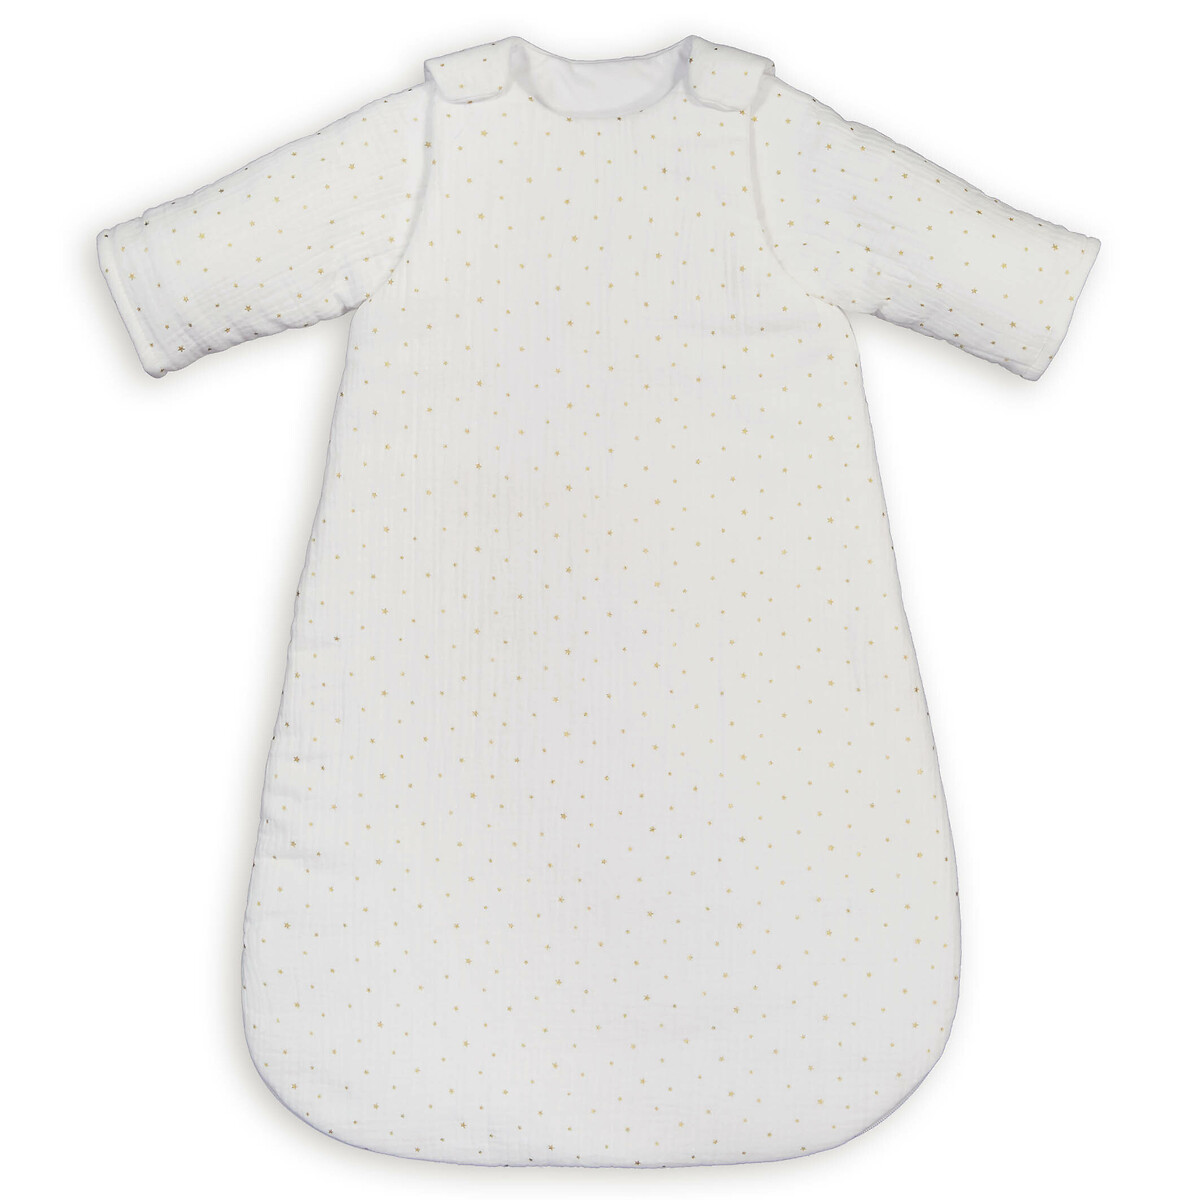 Конверт Для новорожденных из газовой хлопчатобумажной ткани 2 года - 86 см белый